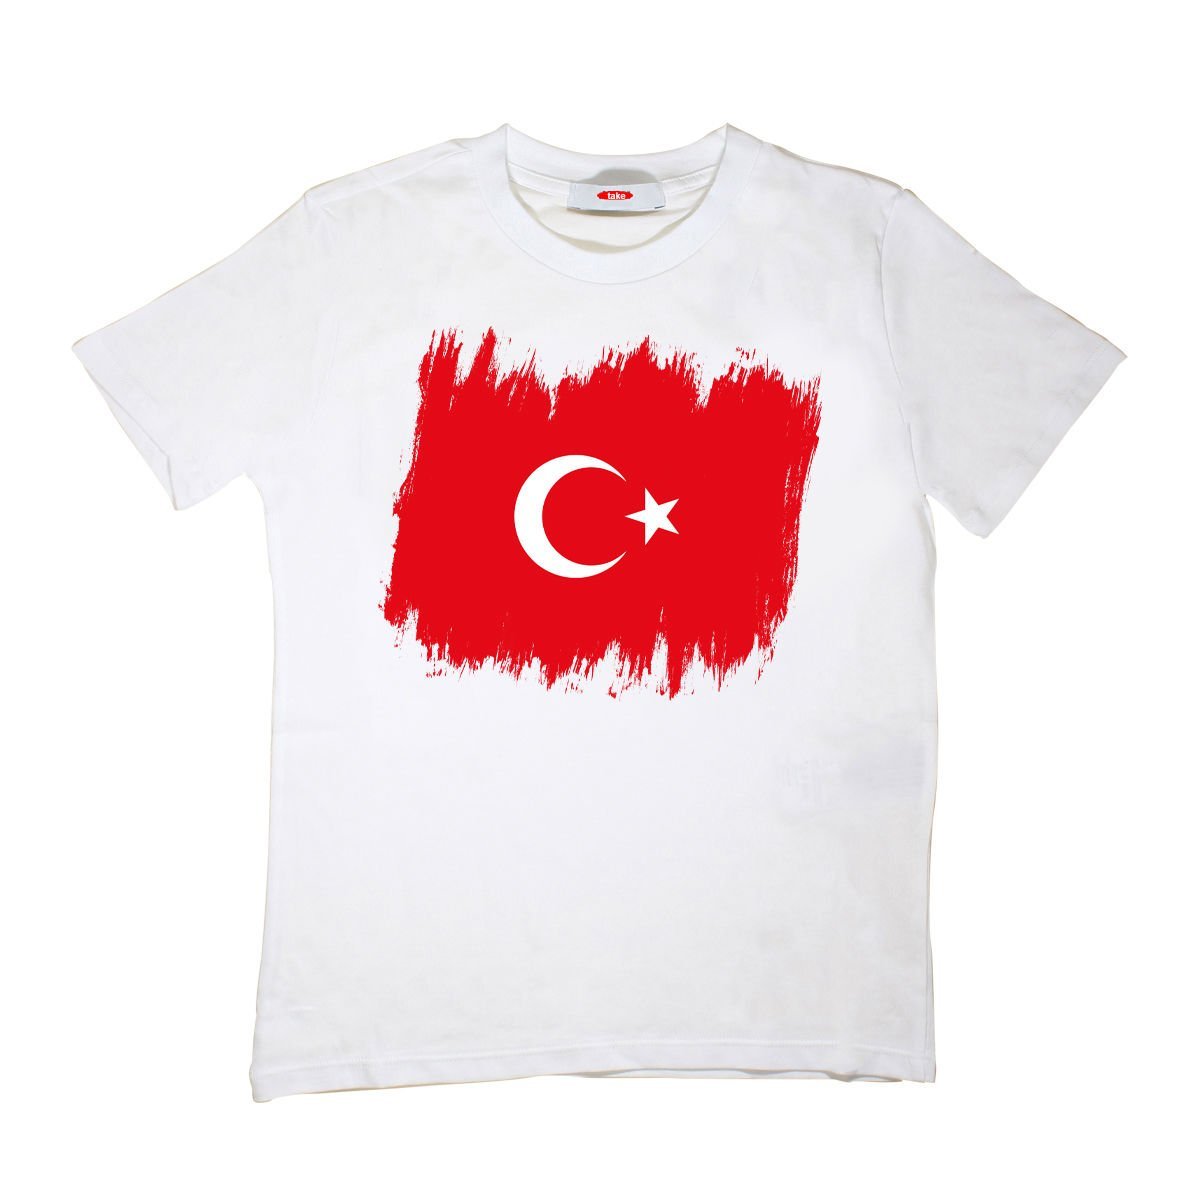 Türk Bayrağı Baskılı Çocuk Tişört Unisex